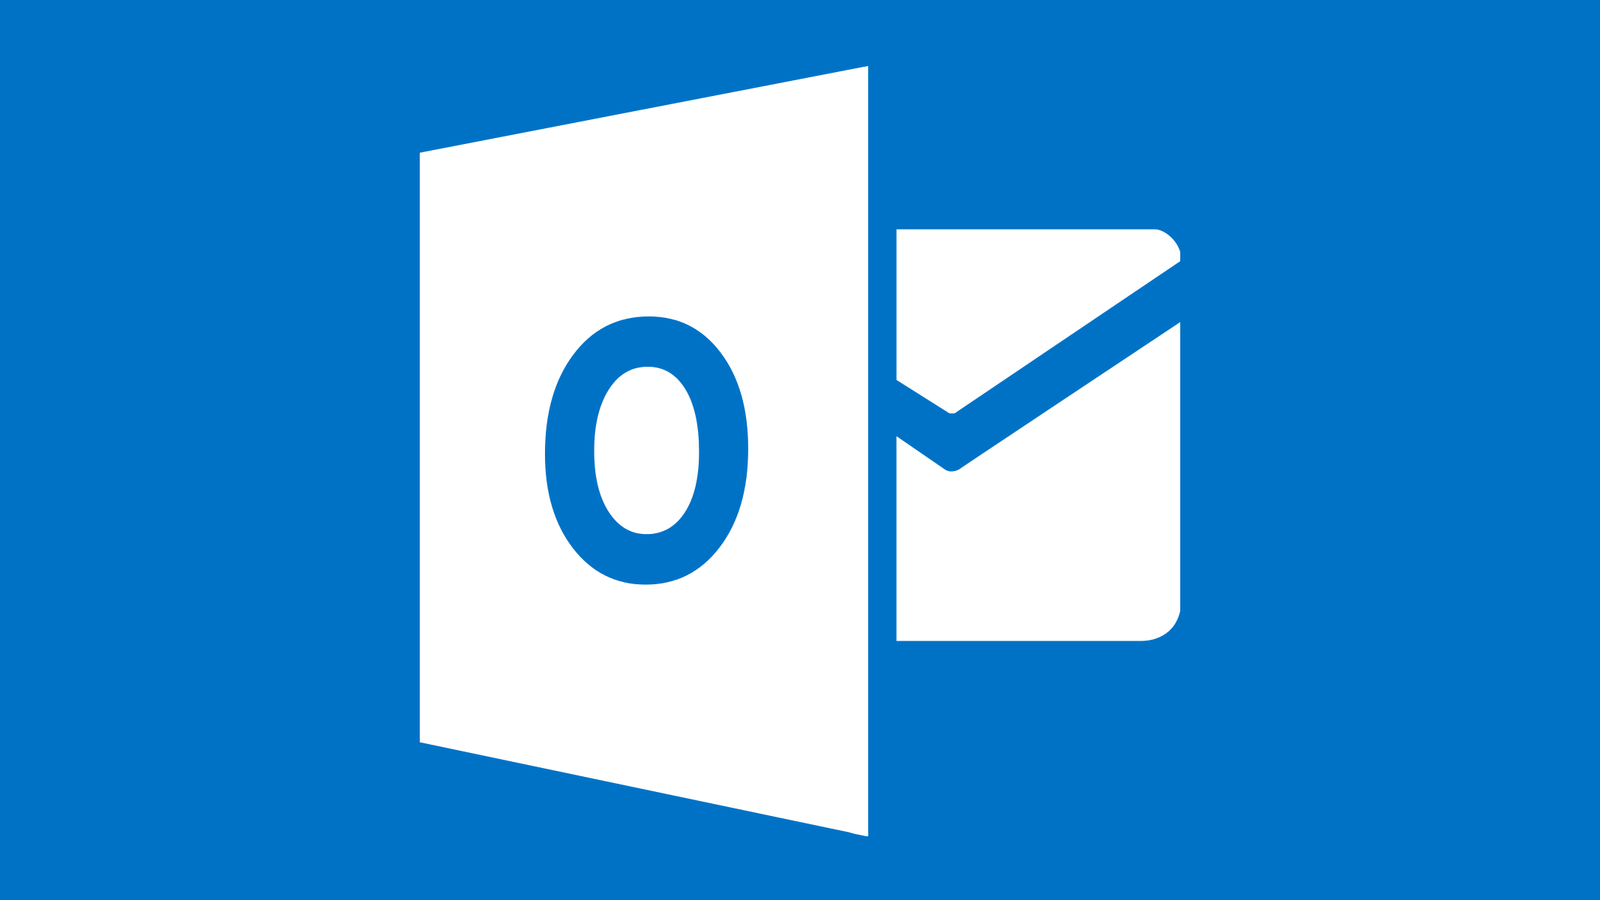 Outlook nově podporuje synchronizaci kalendářů